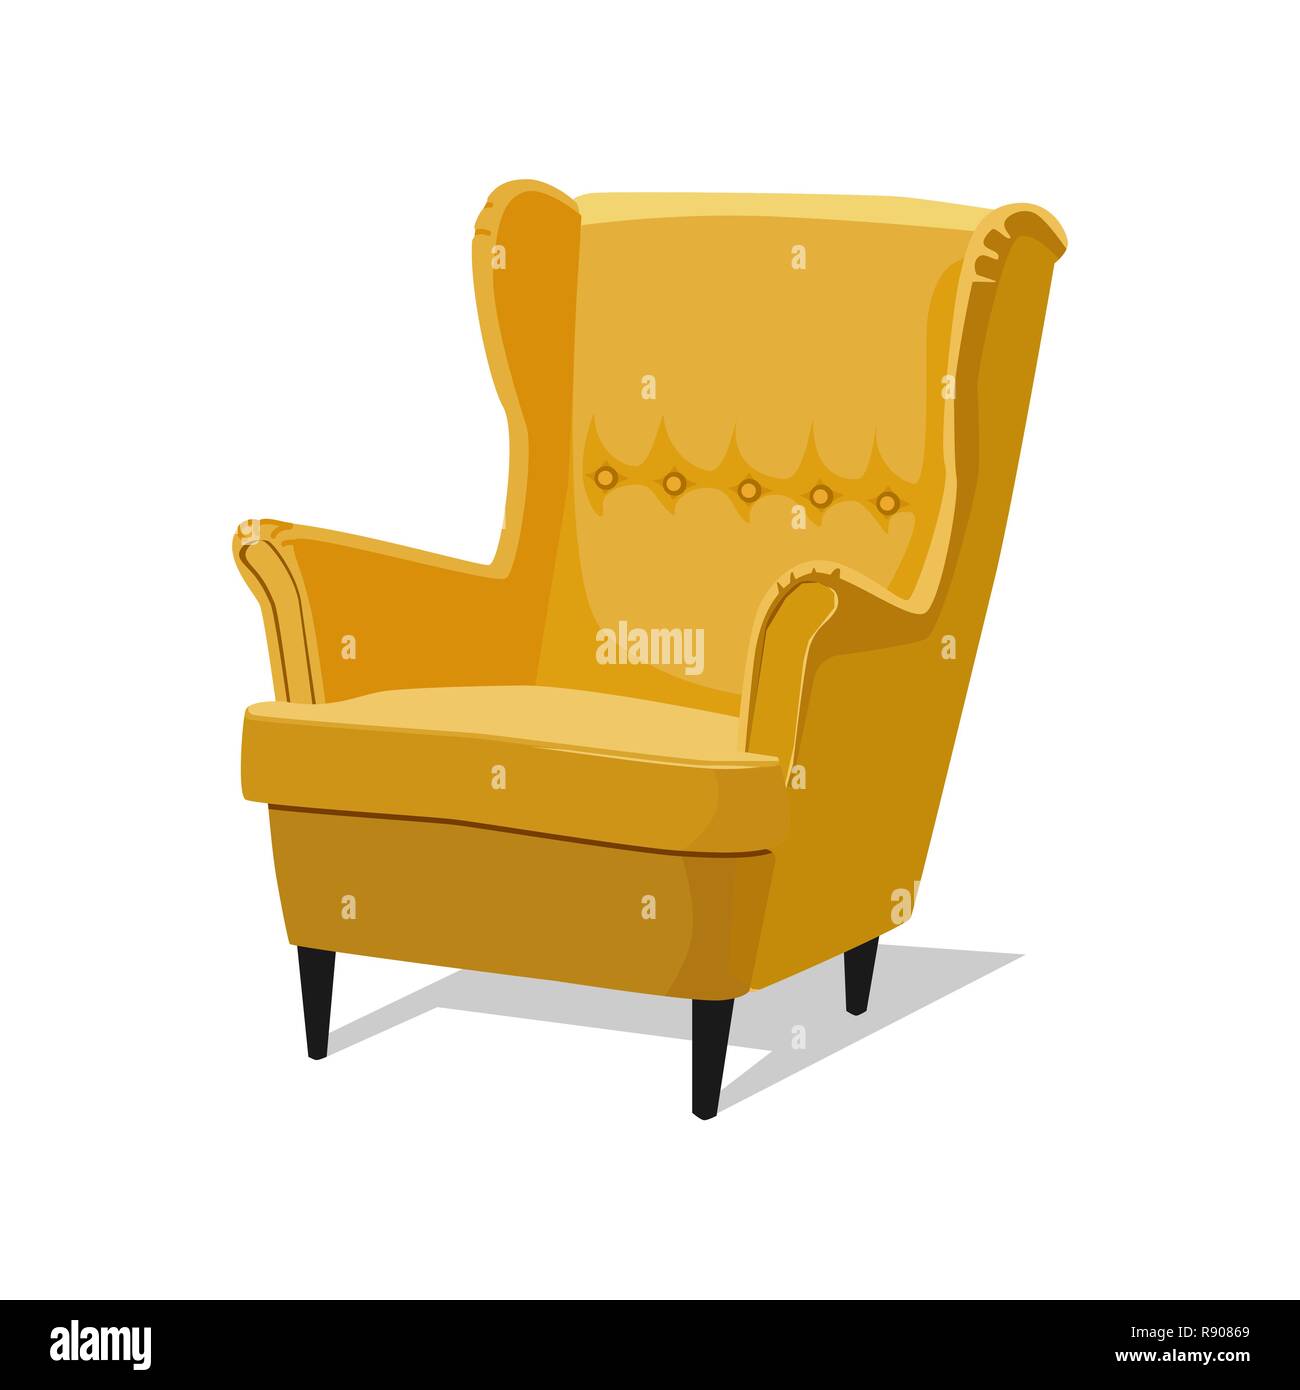 Moderno de color amarillo suave con sillón tapizado - elemento de diseño interior aislado sobre fondo blanco. Ilustración del Vector